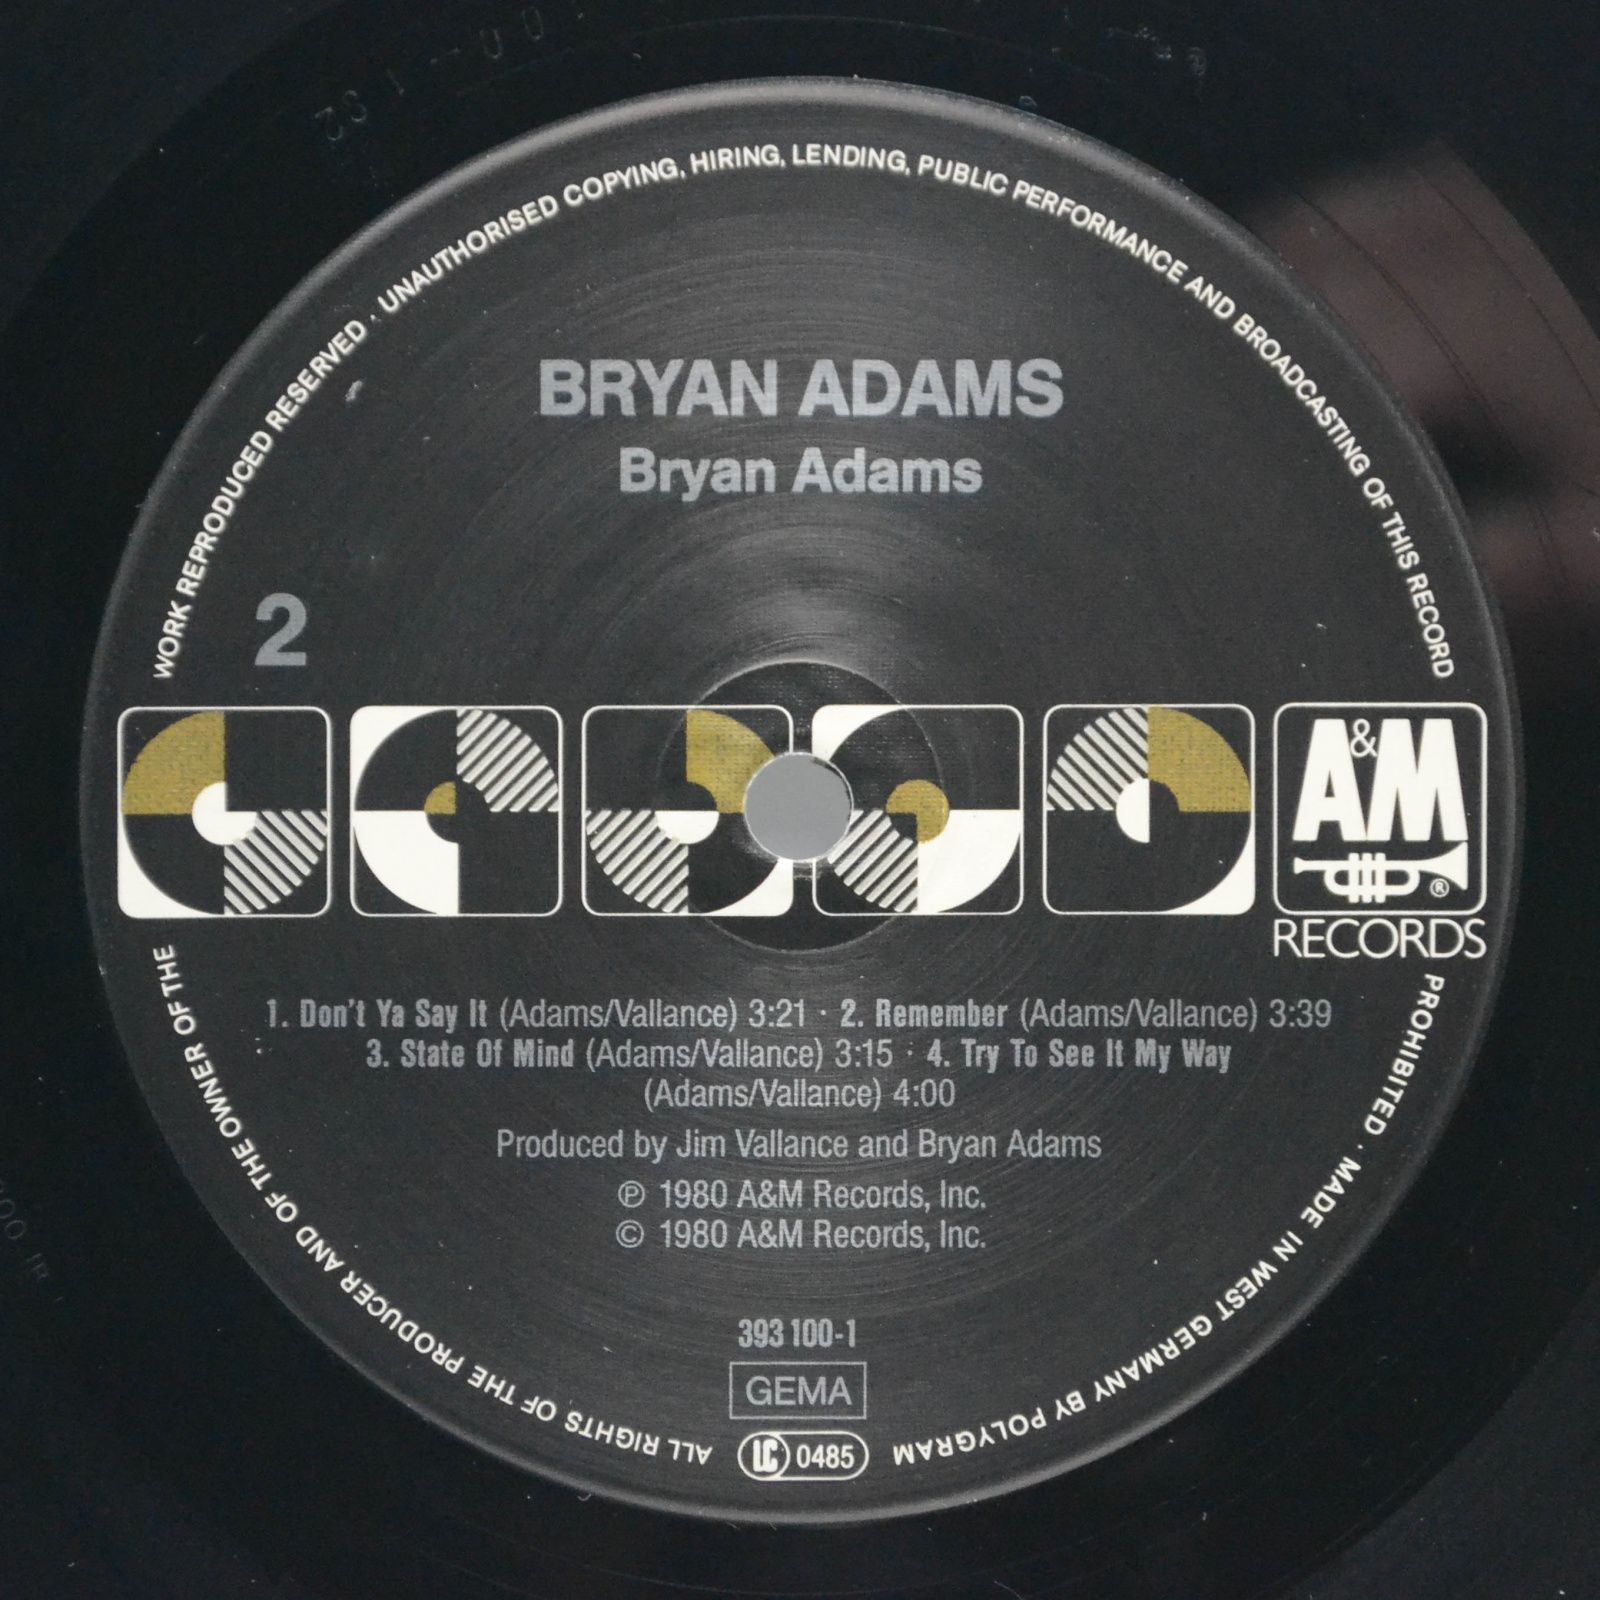 Bryan Adams — Bryan Adams, 1980